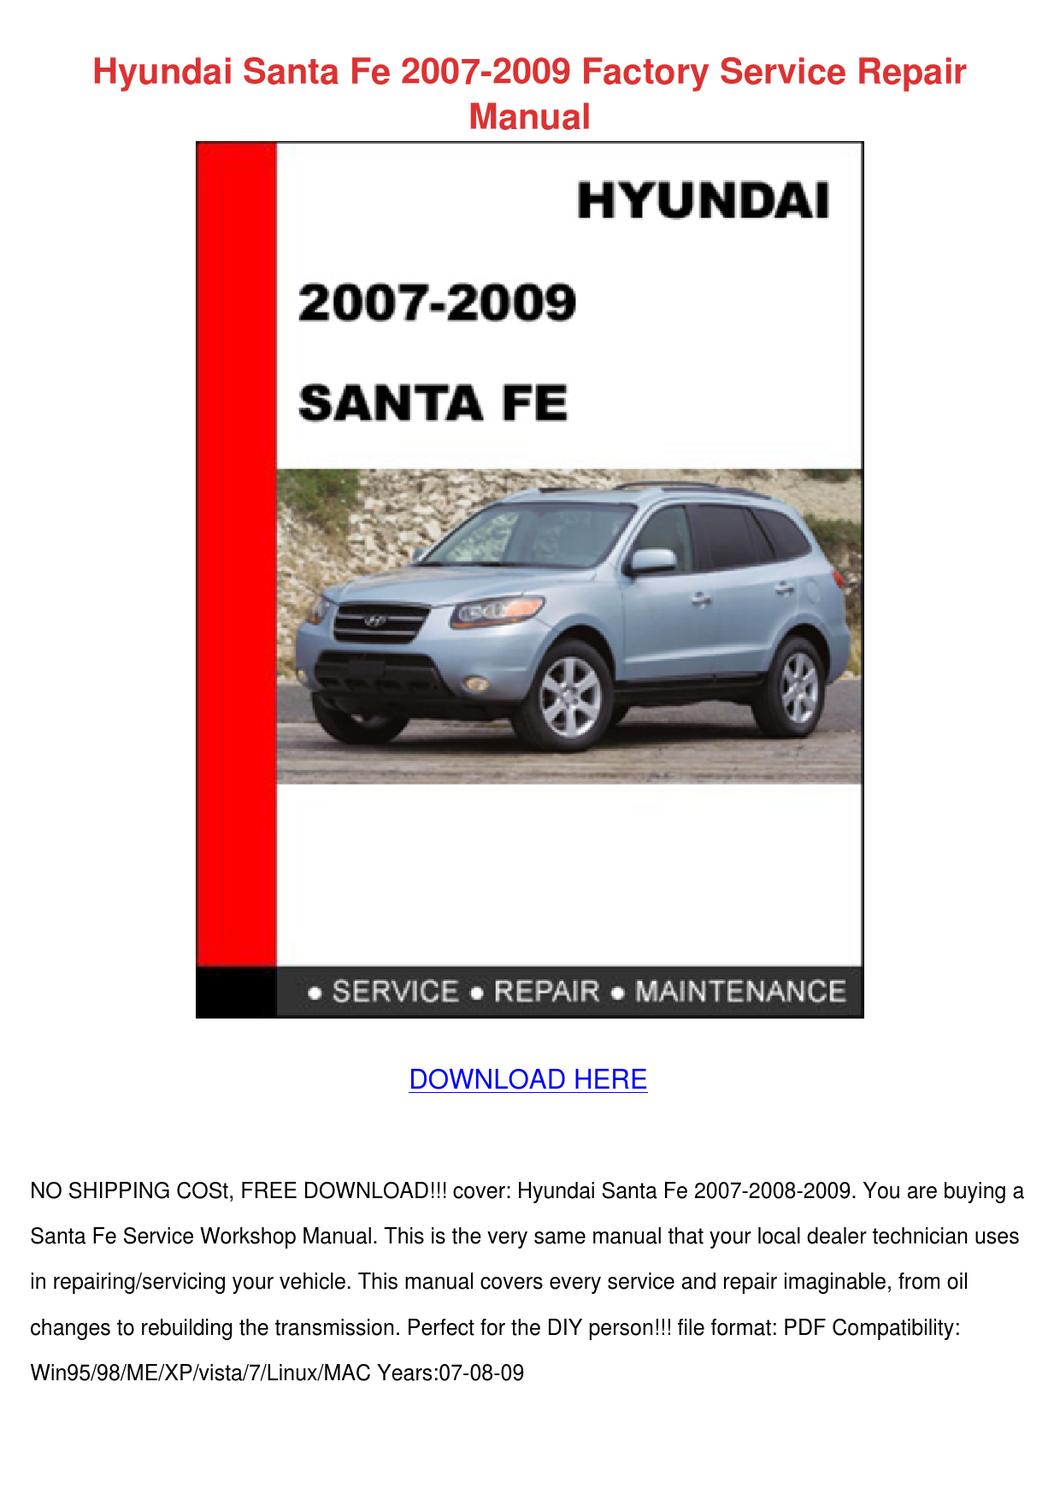 2001 Hyundai Sonata Gls Repair Manual Free Download siteraw